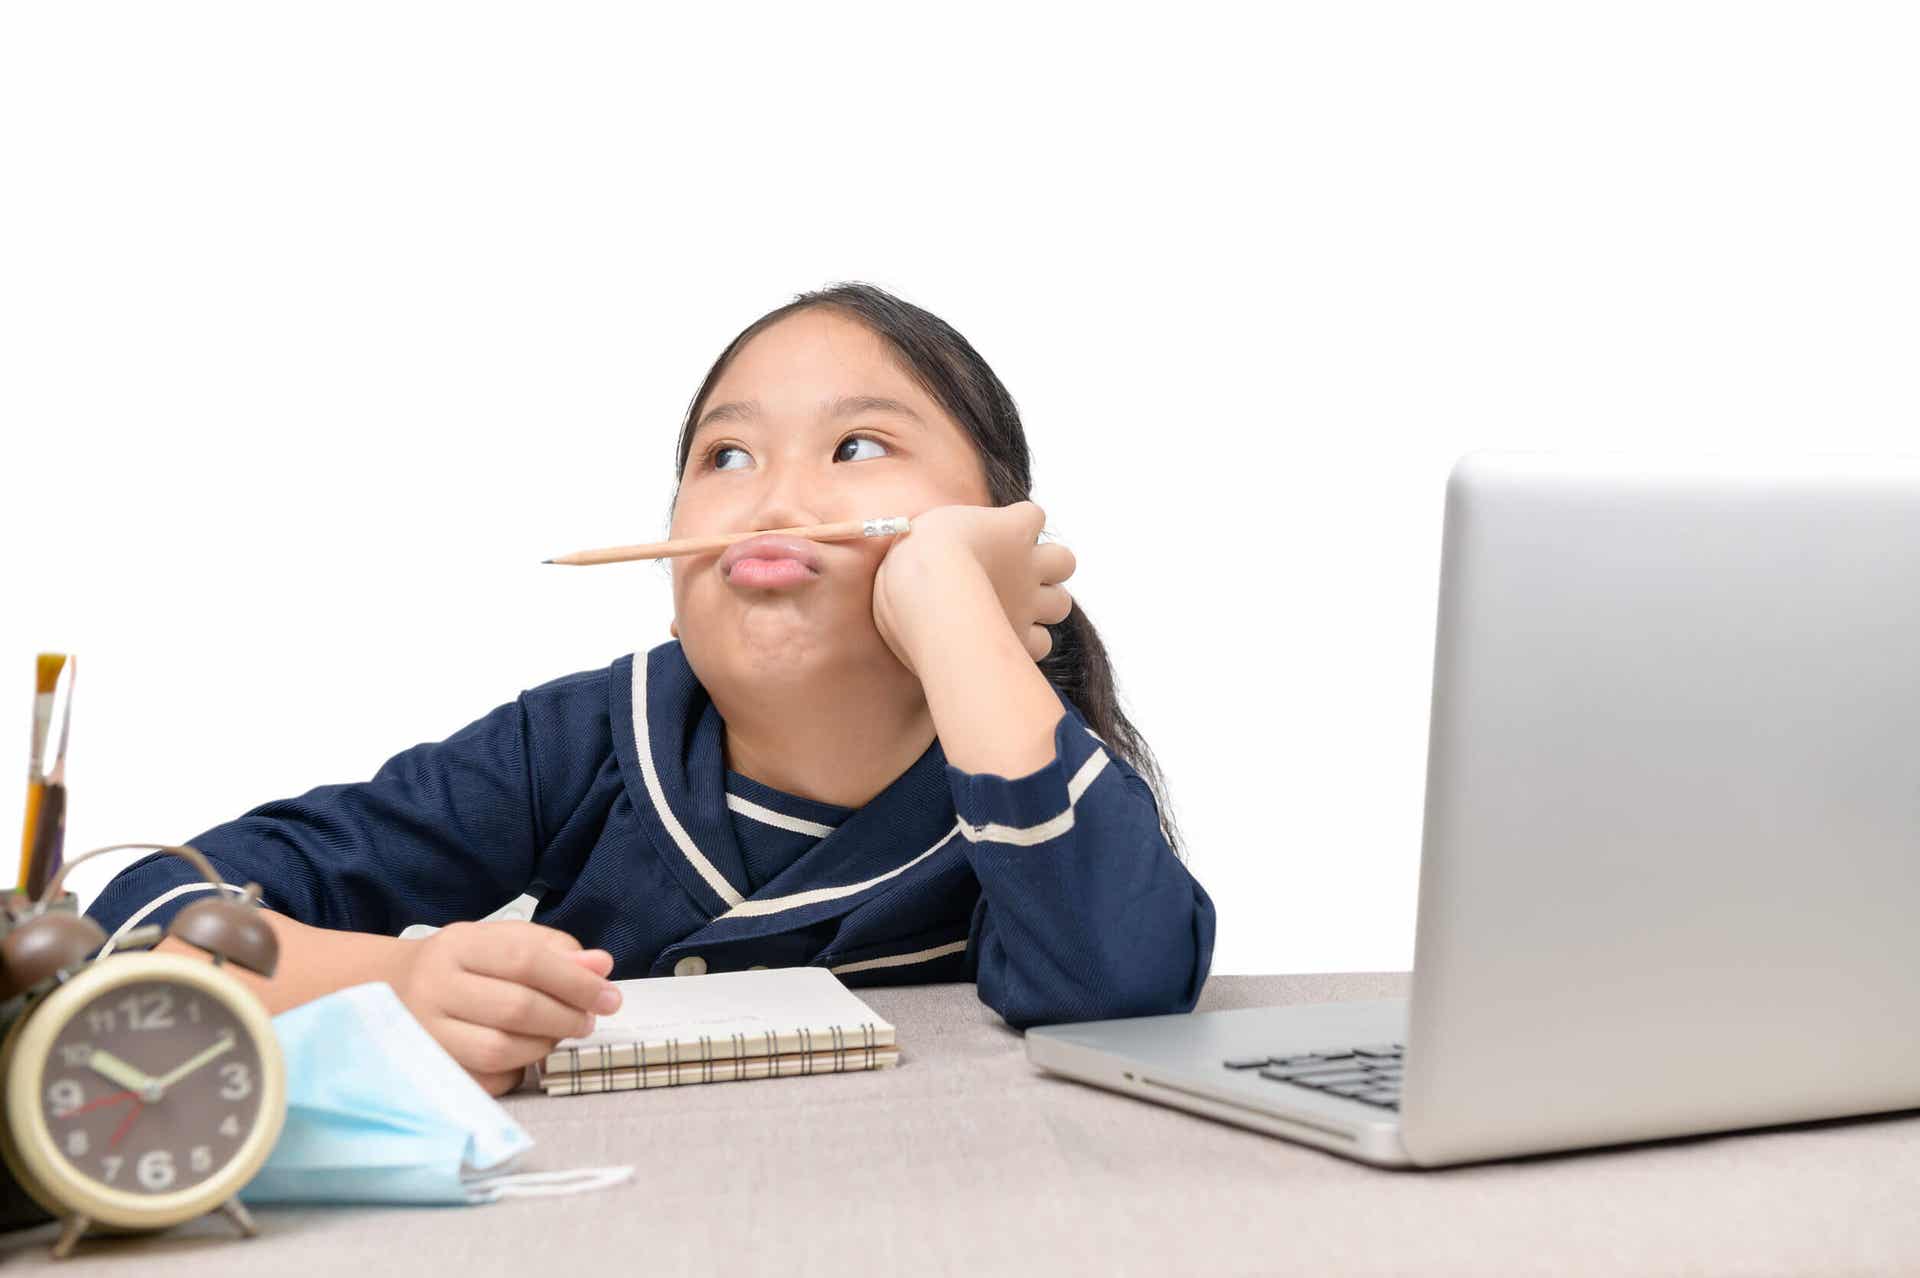 Een meisje zit op een laptopcomputer, kijkt weg en speelt met een potlood.